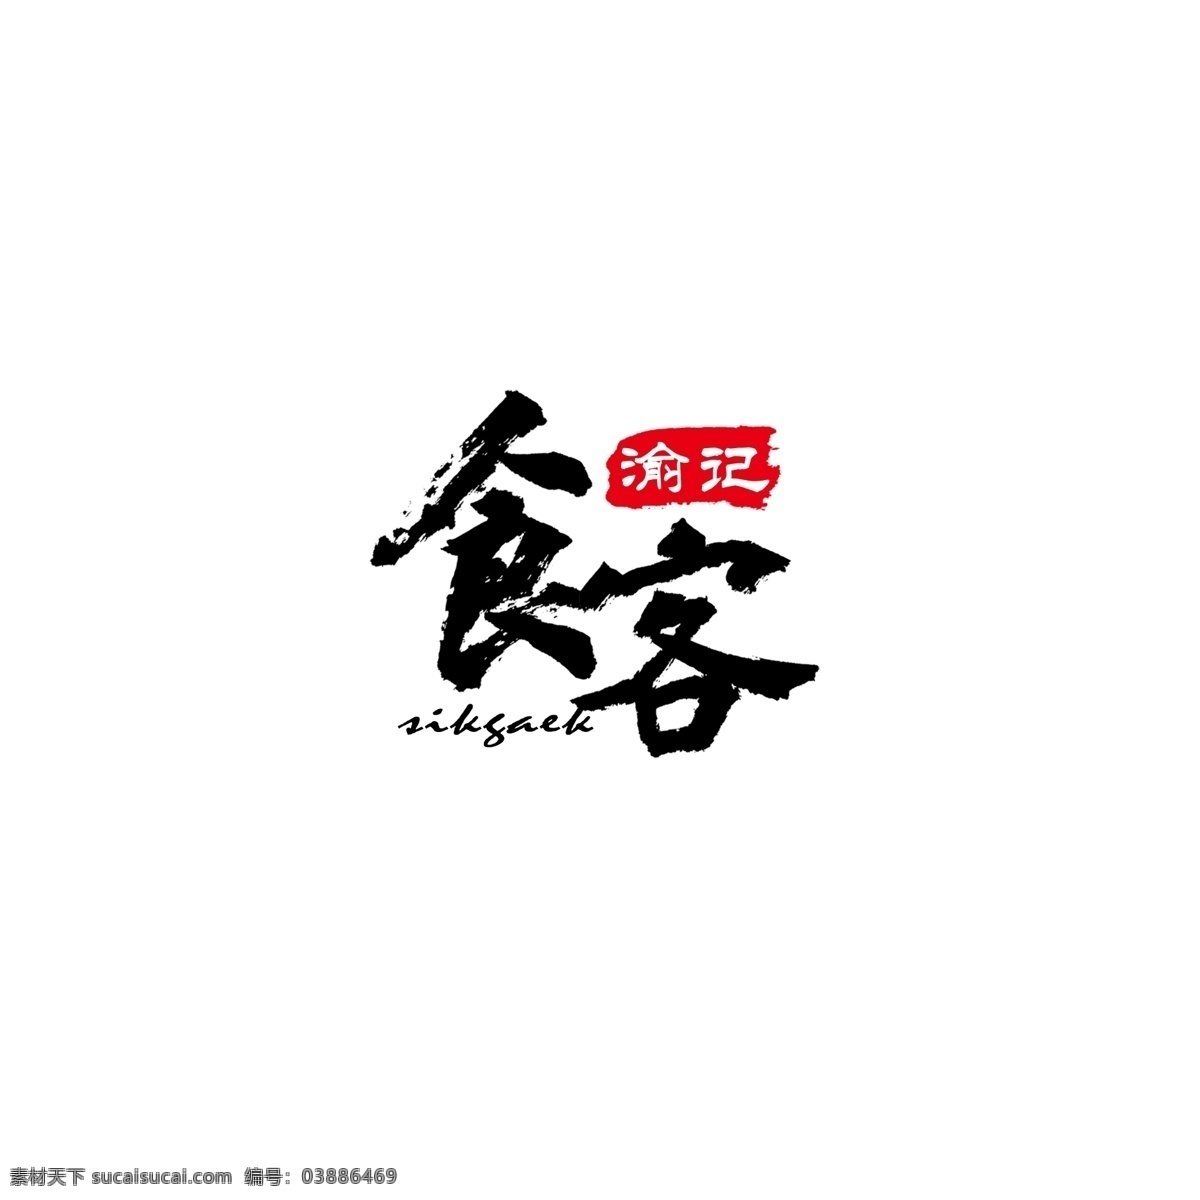 简约 中国 风 手写 字体 餐饮 logo 中国风 印章 手写字体 食客 餐饮logo